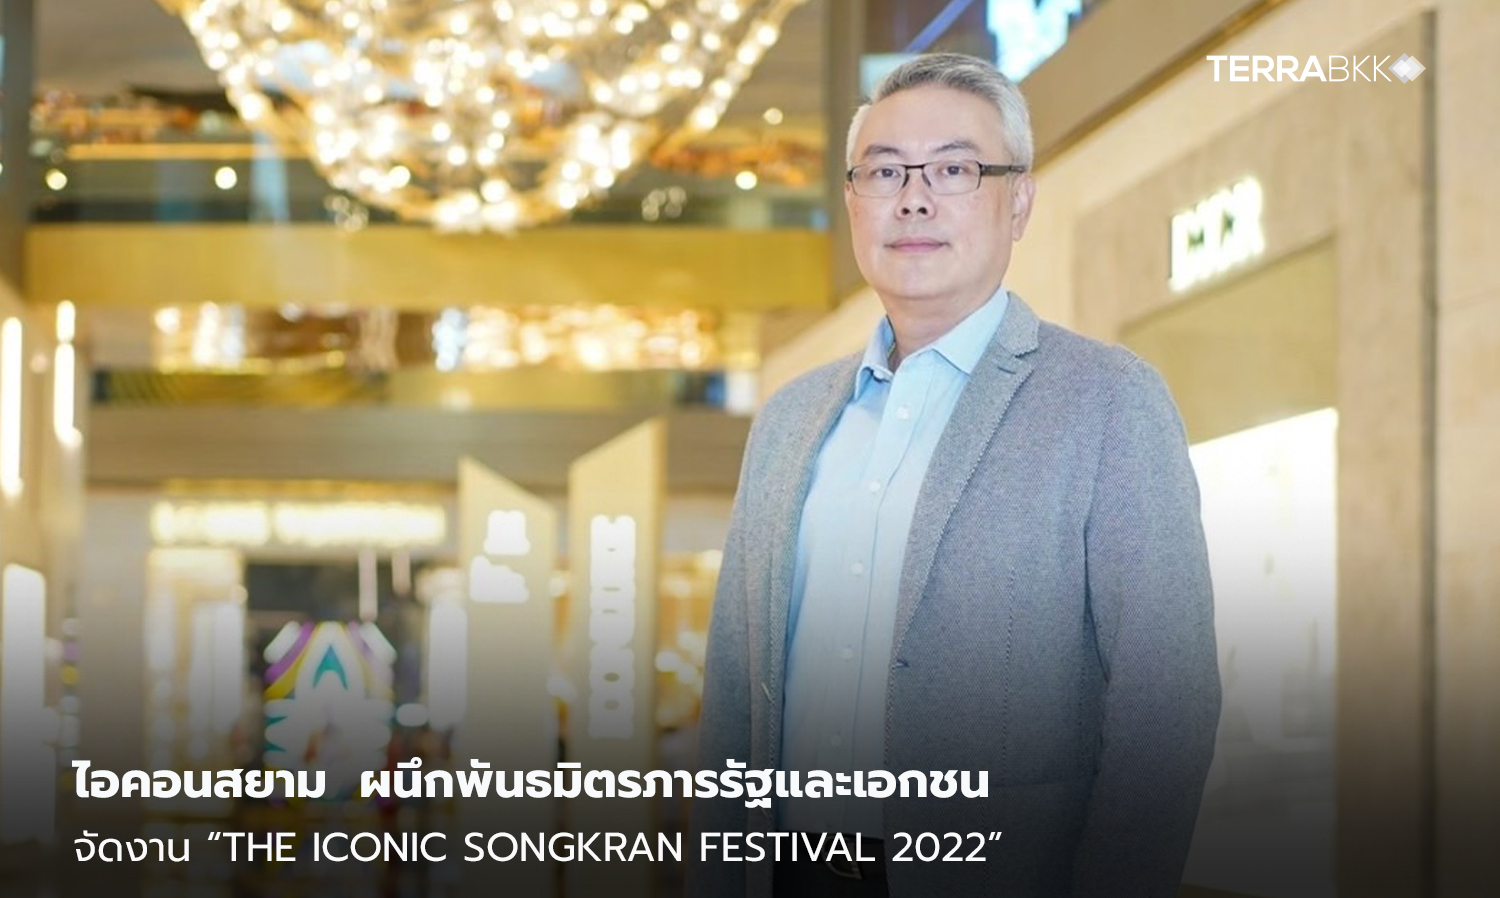 ไอคอนสยาม  ผนึกพันธมิตรภารรัฐและเอกชน  จัดงาน “The ICONIC Songkran Festival 2022” มหัศจรรย์เจ้าพระยามหาสงกรานต์ ๒๕๖๕